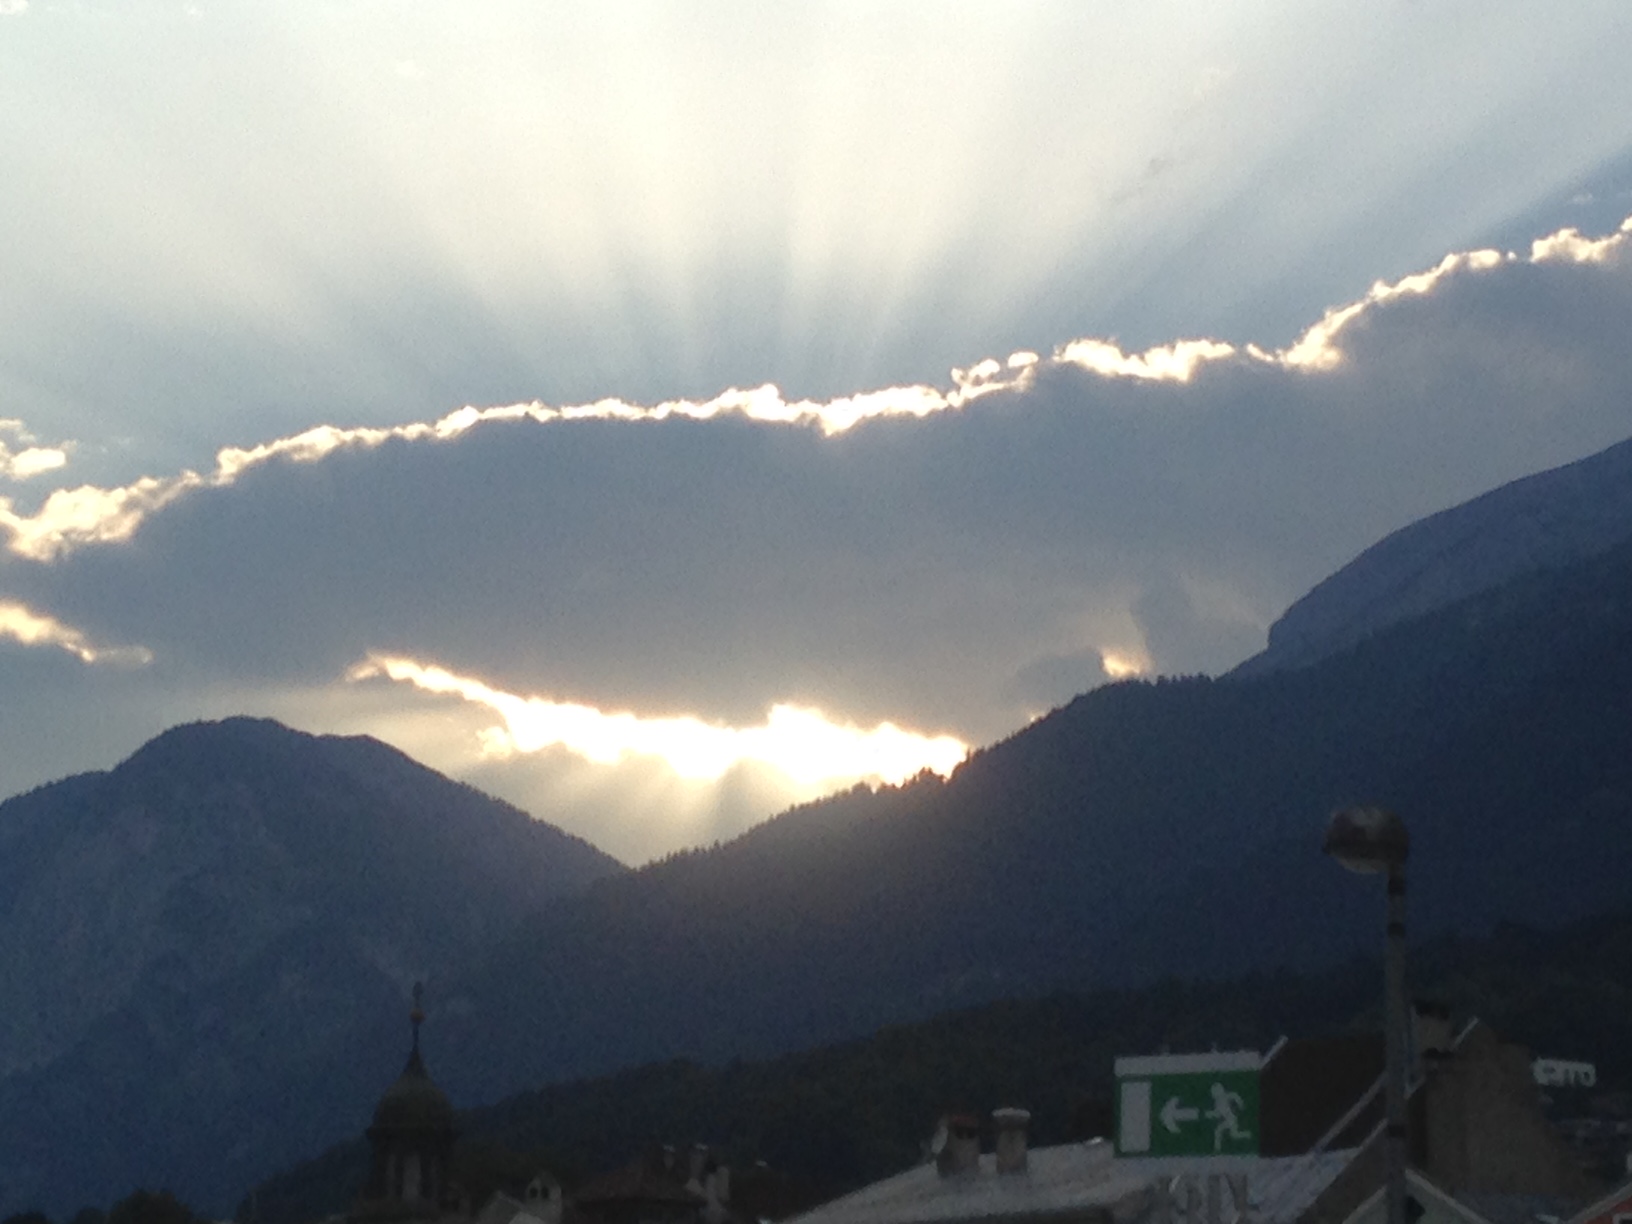 Wolken über Innsbruck